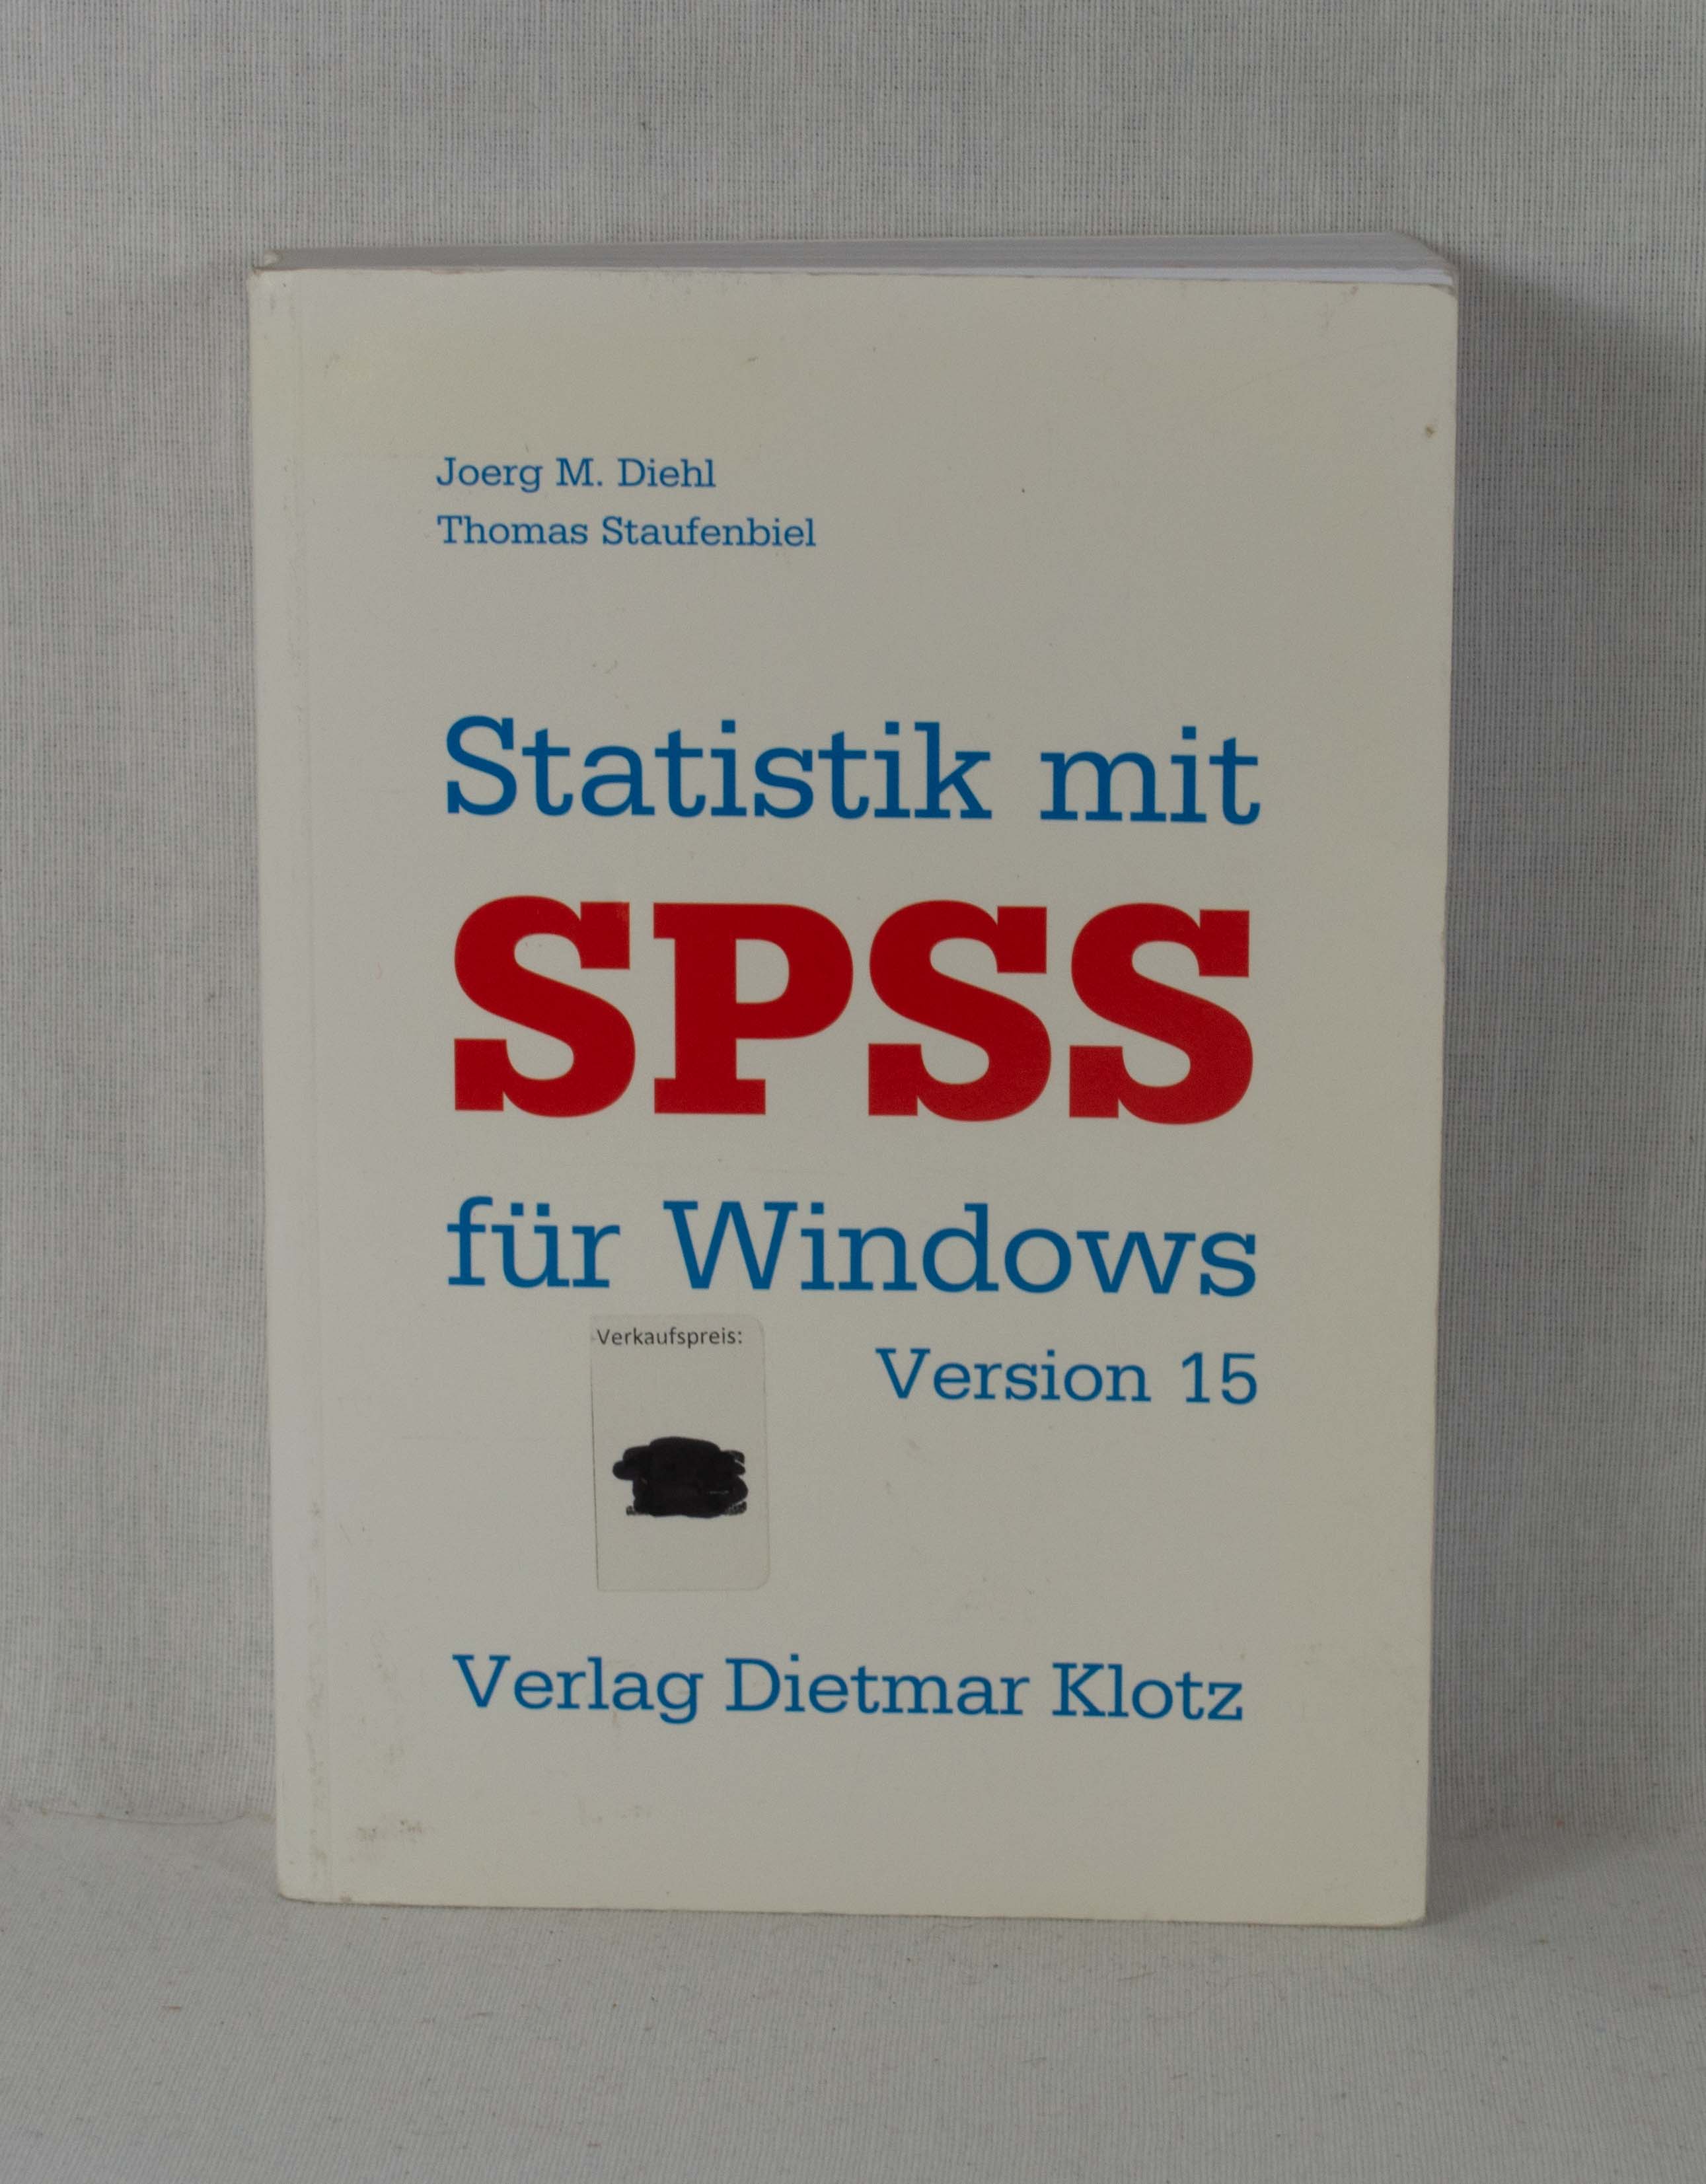 Statistik mit SPSS für Windows, Version 15.  1. Aufl. - Diehl, Joerg M. und Thomas Staufenbiel